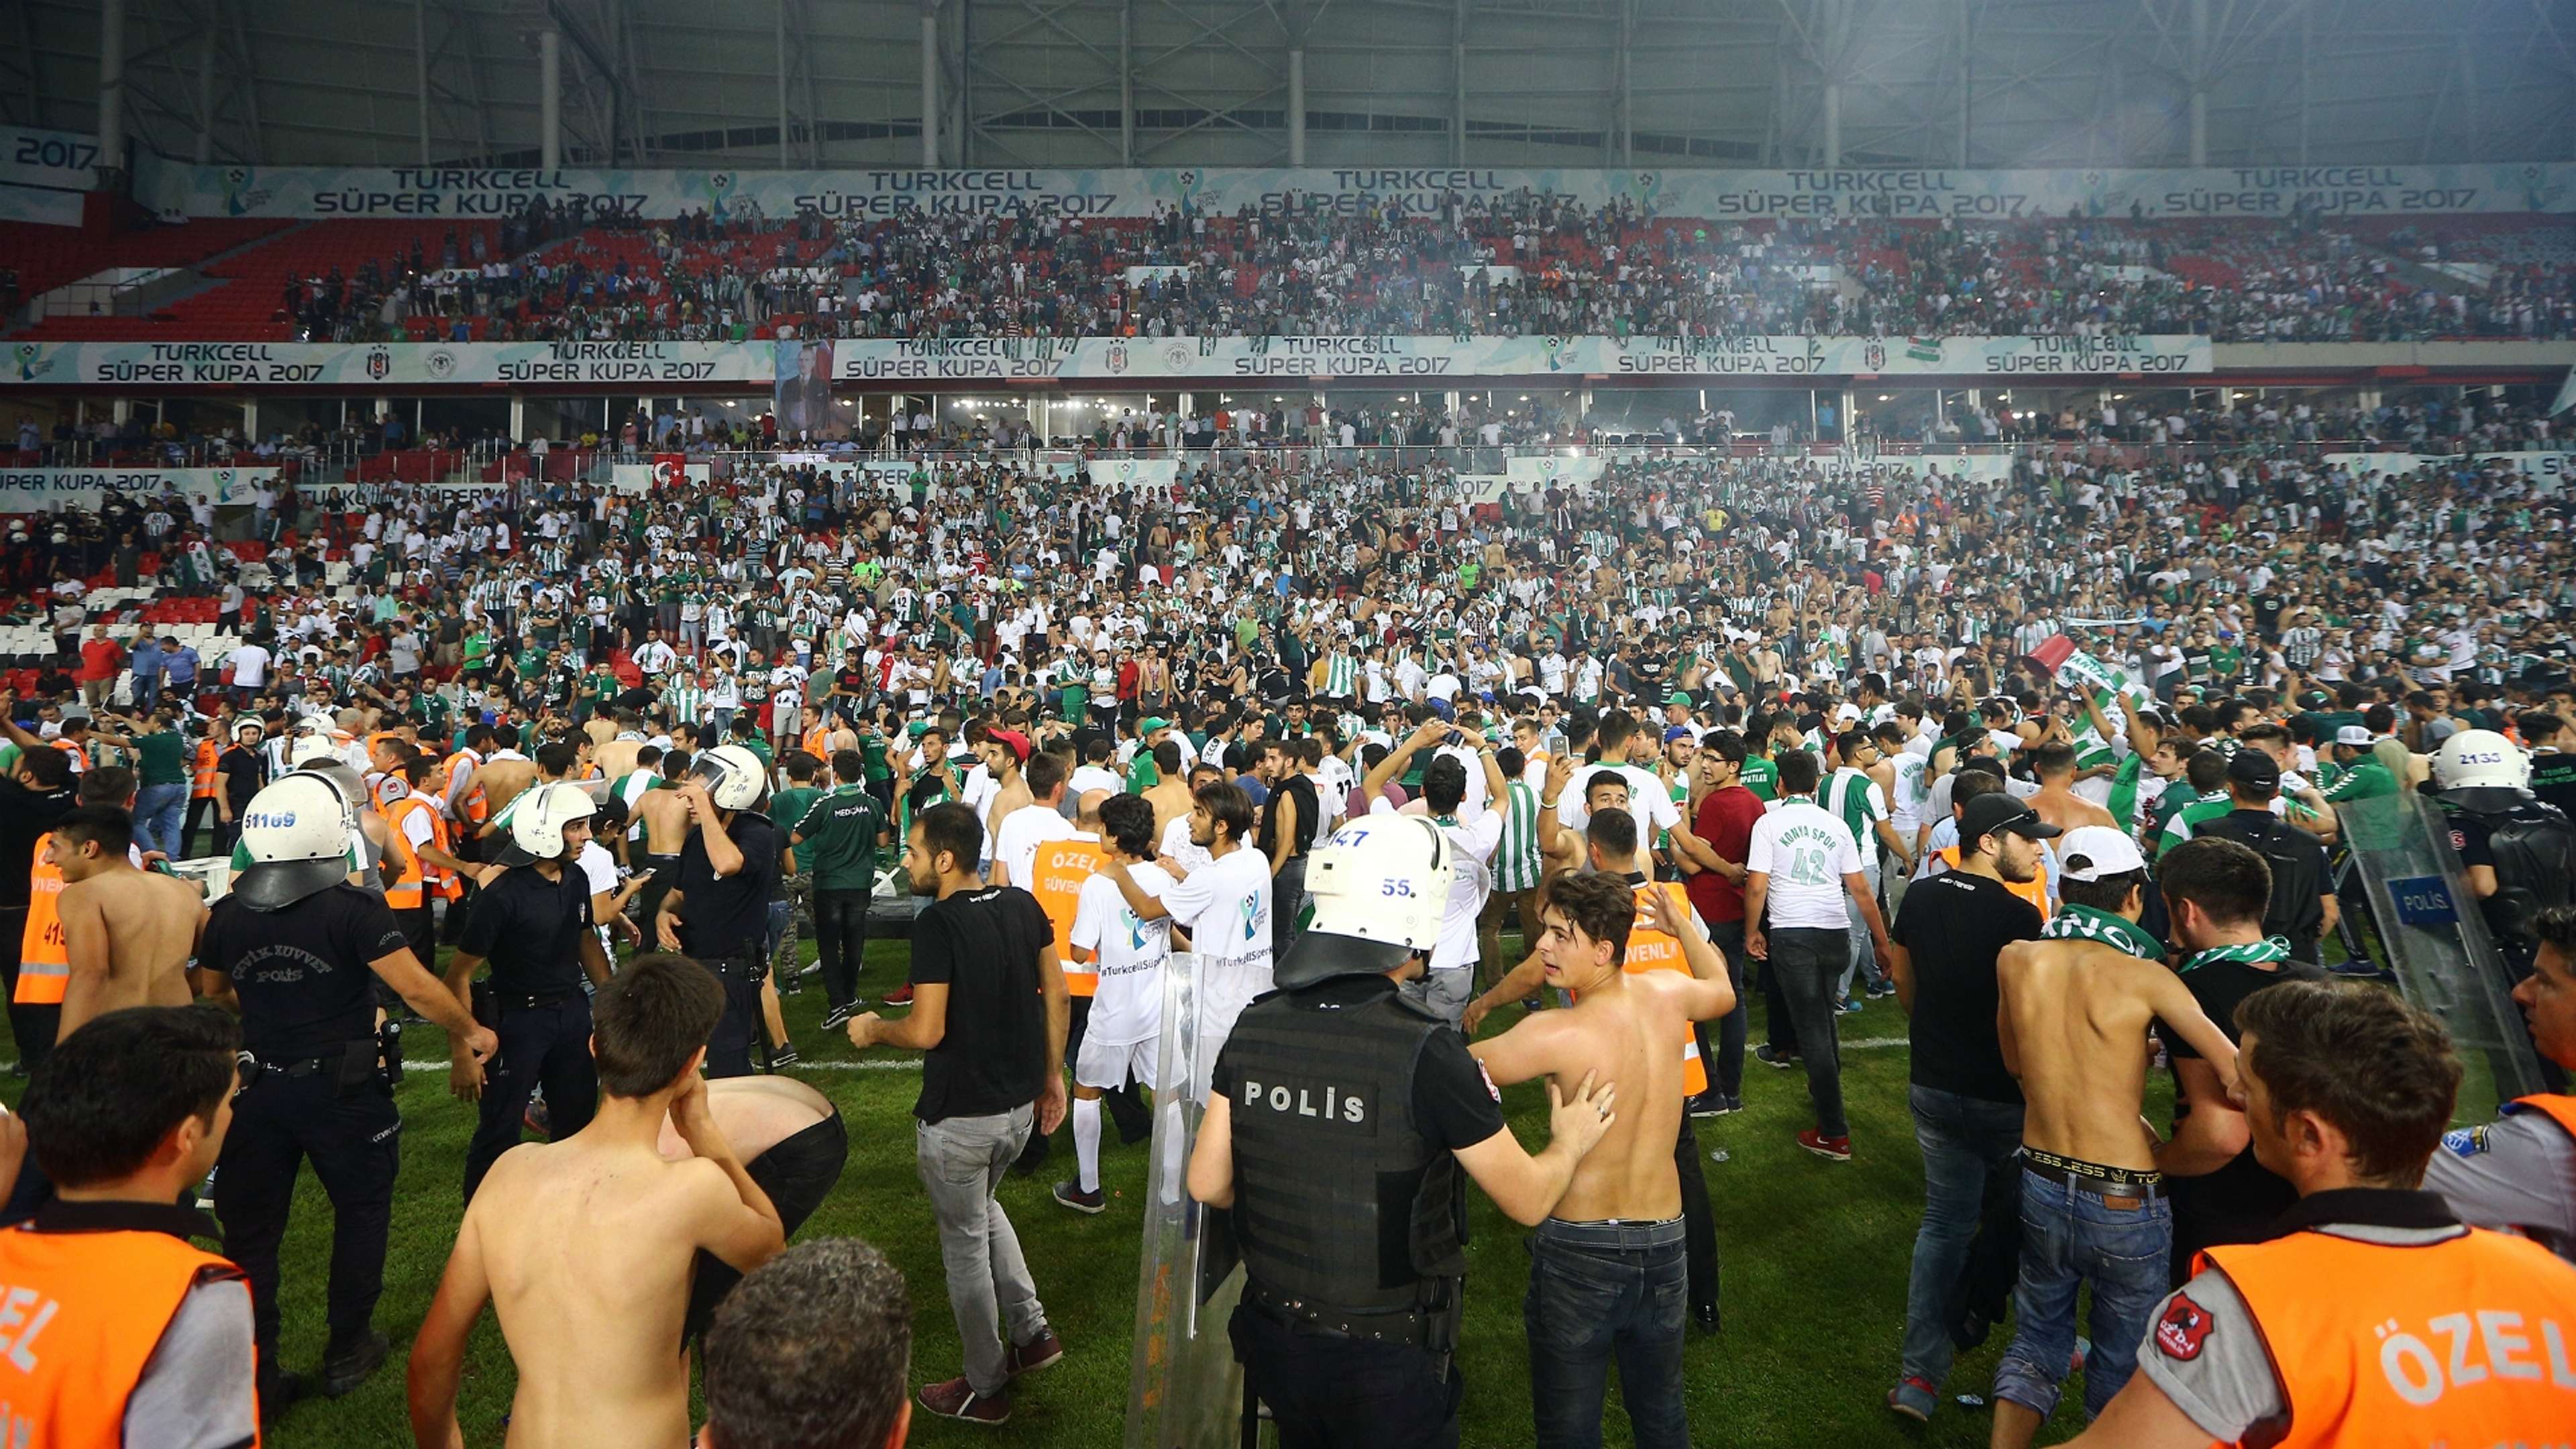 Besiktas Konyaspor pitch invasion